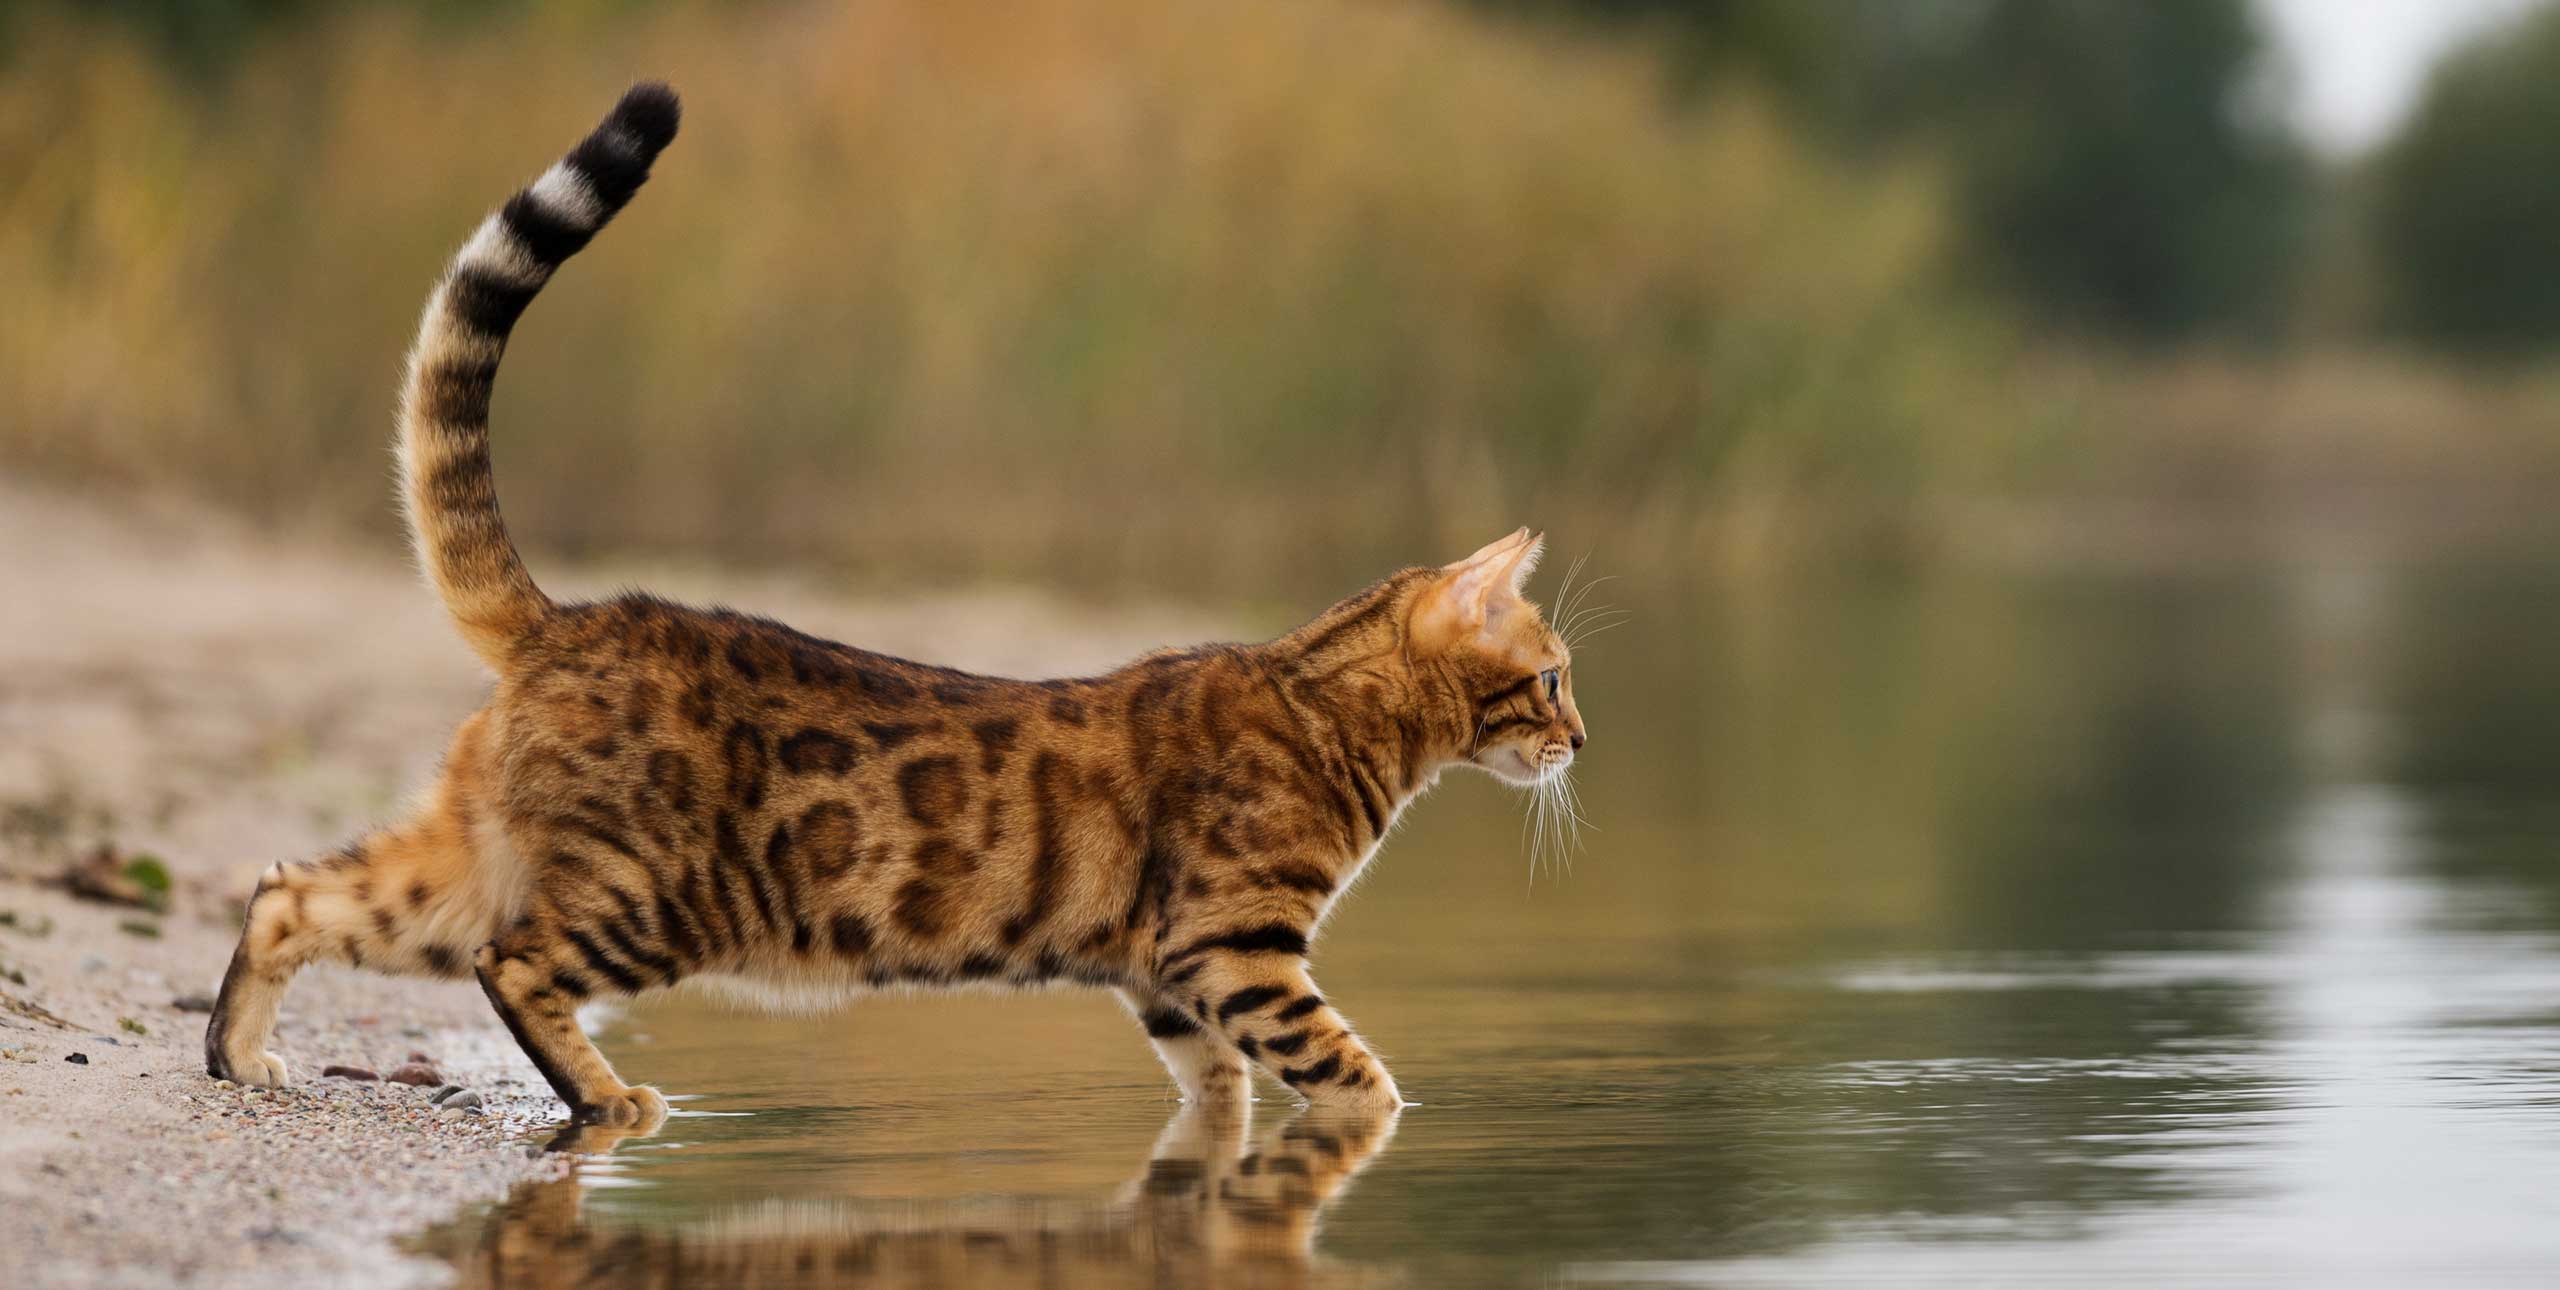 Cat in water